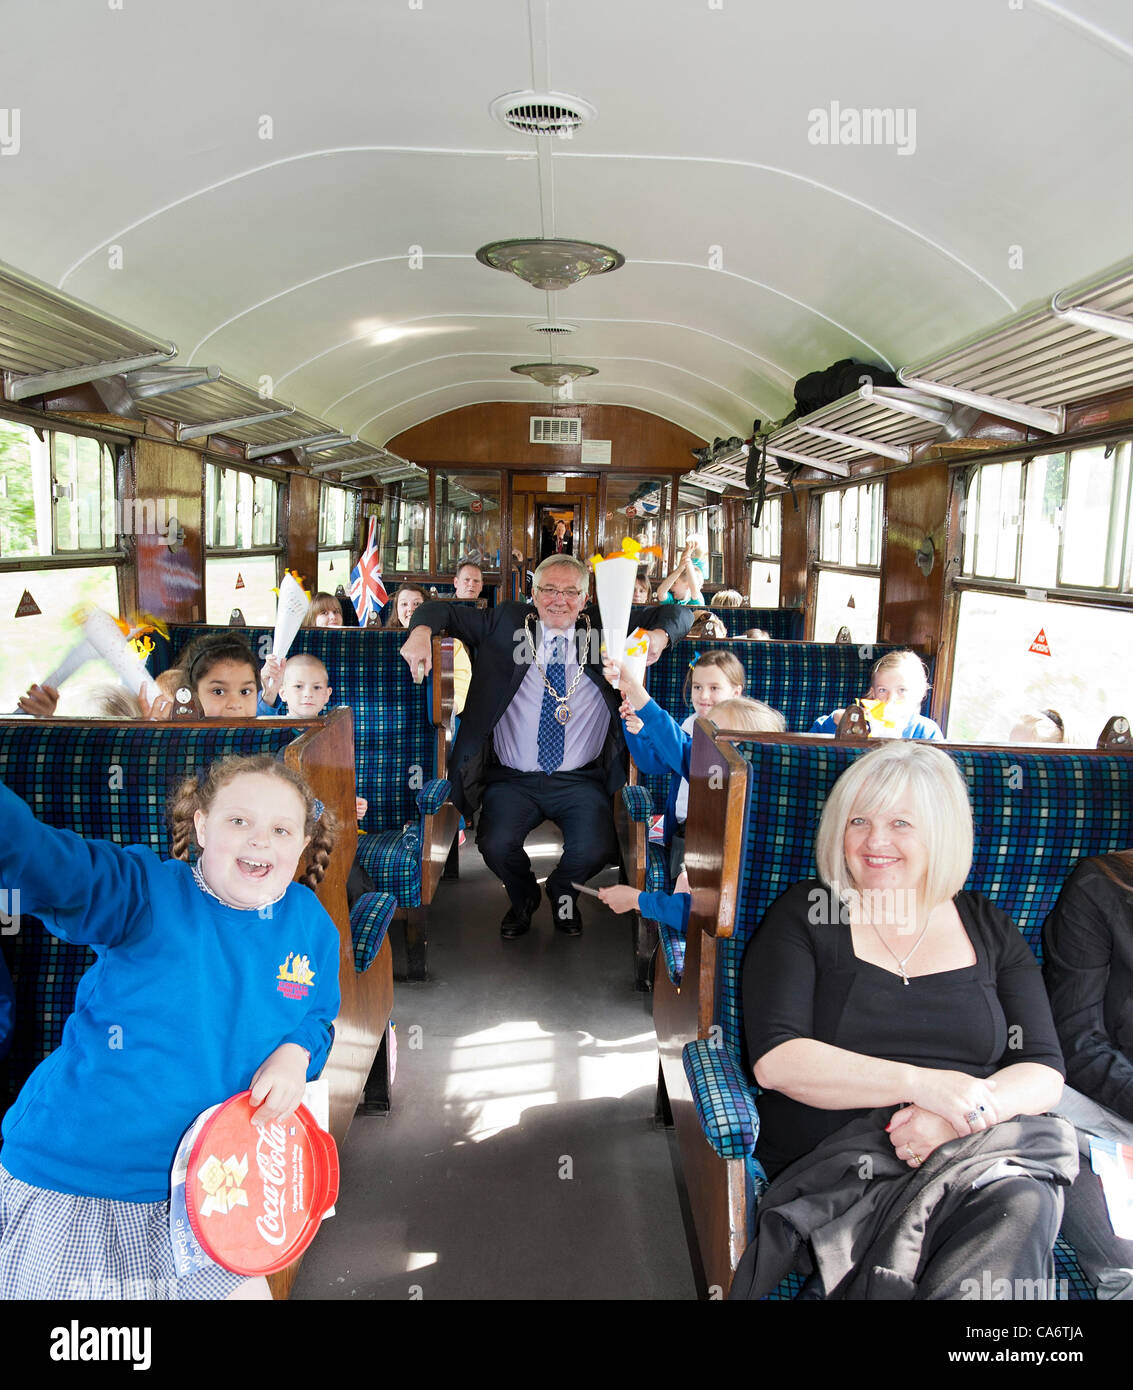 Lundi 18 juin2012. Maire de la ville de Pickering William Oxley pose avec les enfants de l'école, pendant le trajet en train de Whitby à Pickering sur le North Yorkshire Moors railway train la Sir Nigel Gresley. Banque D'Images